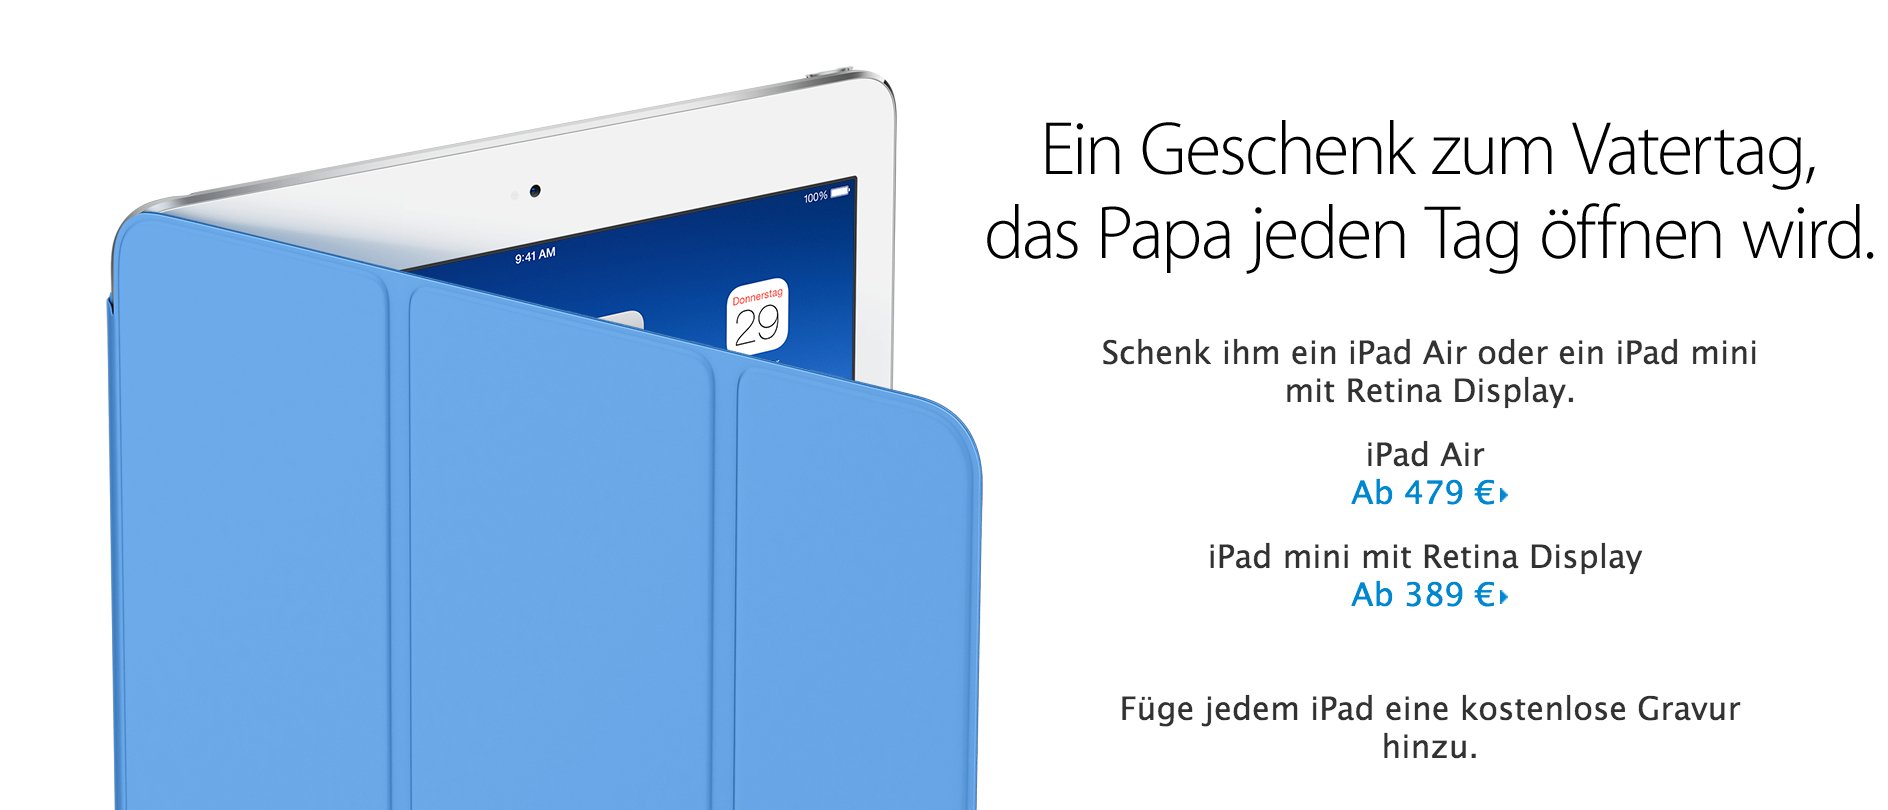 Geschenke zu Vatertag: Schenke Papa ein iPad! 2